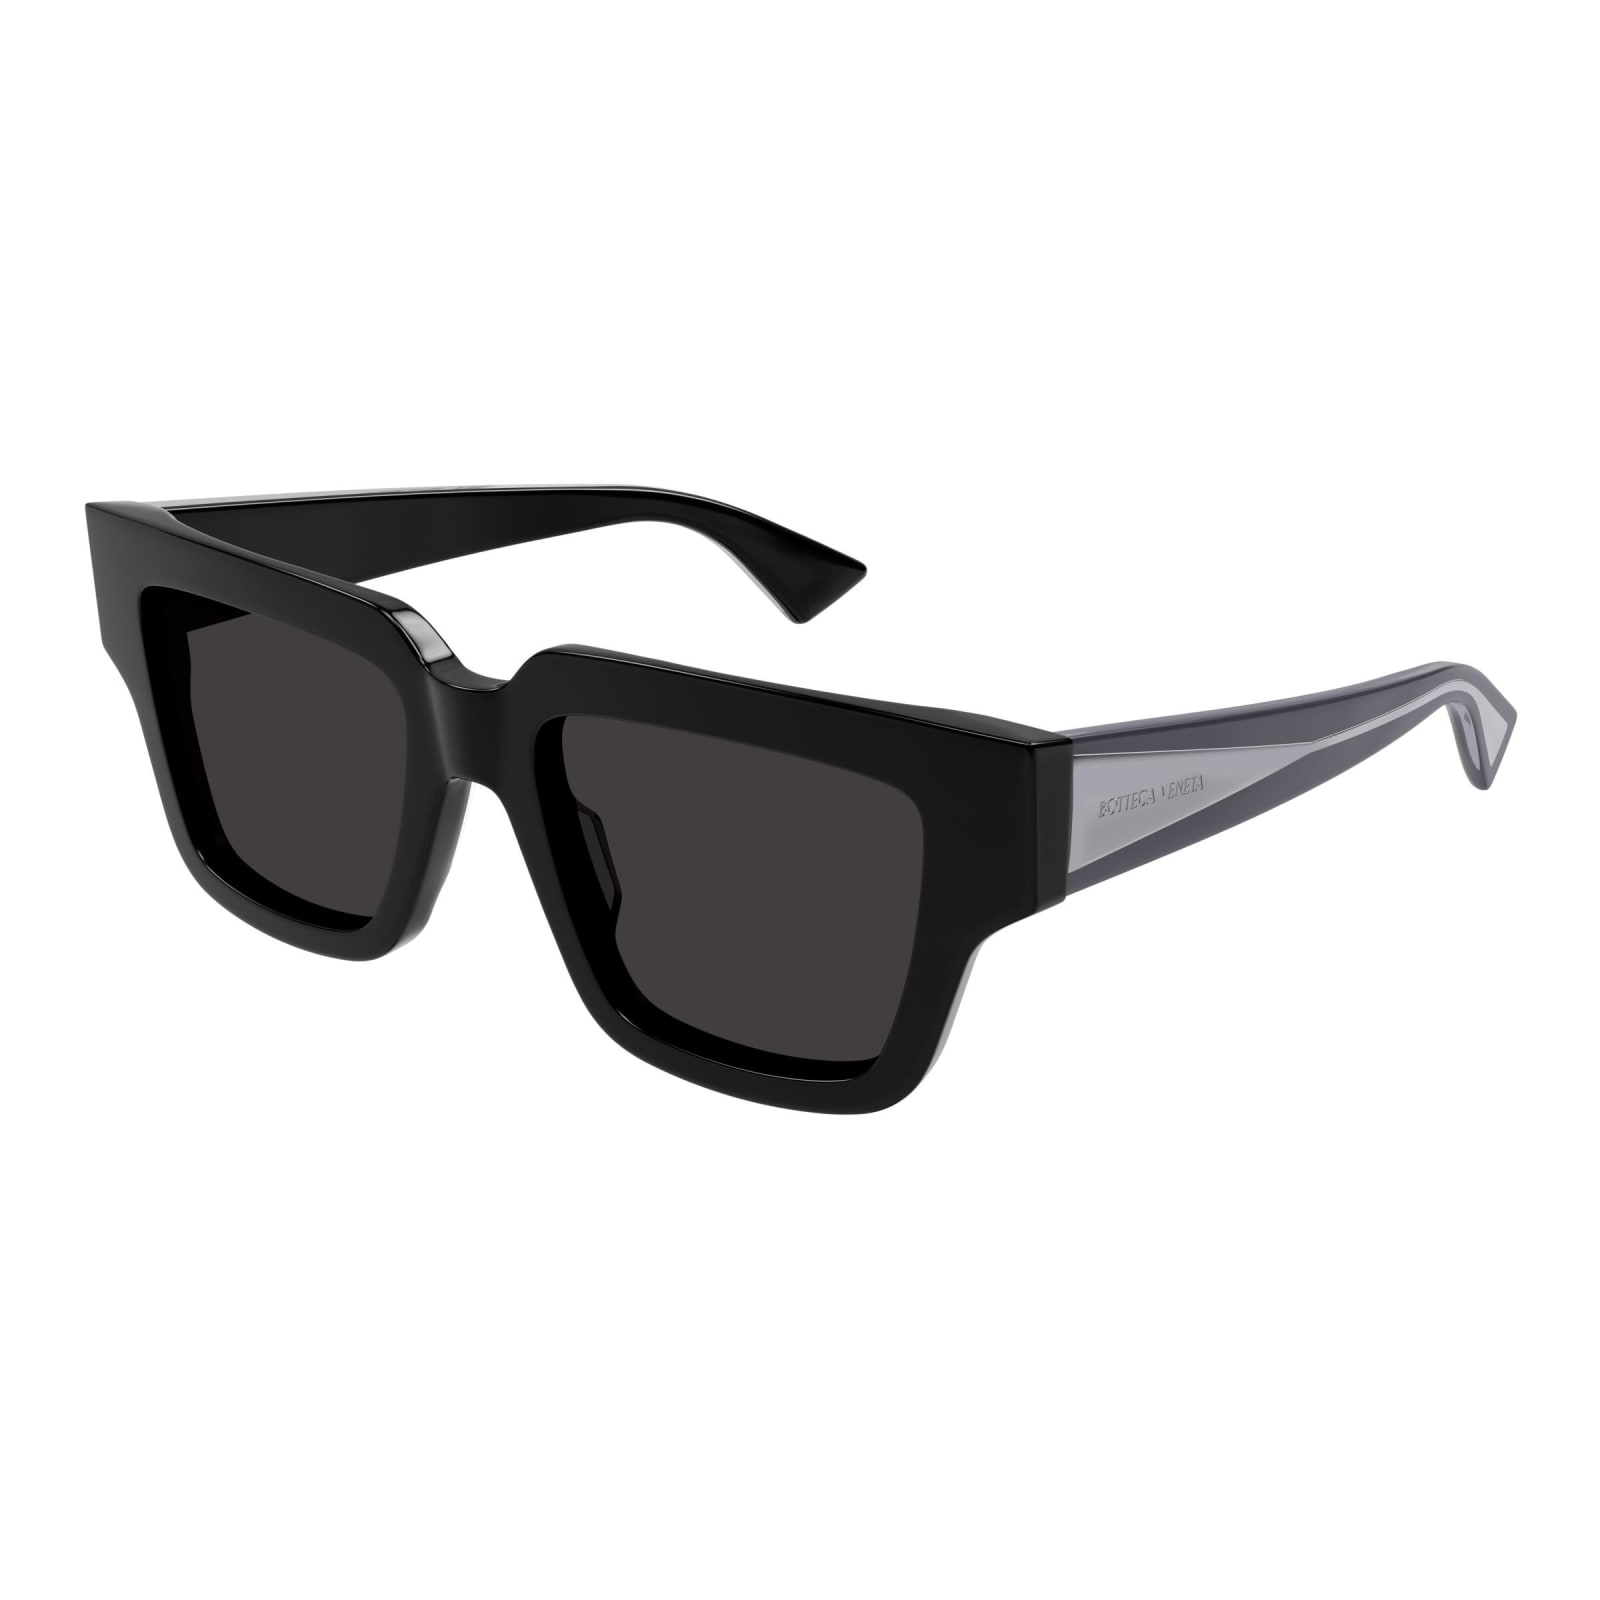 Bottega Veneta Sunglasses In Nero/grigio